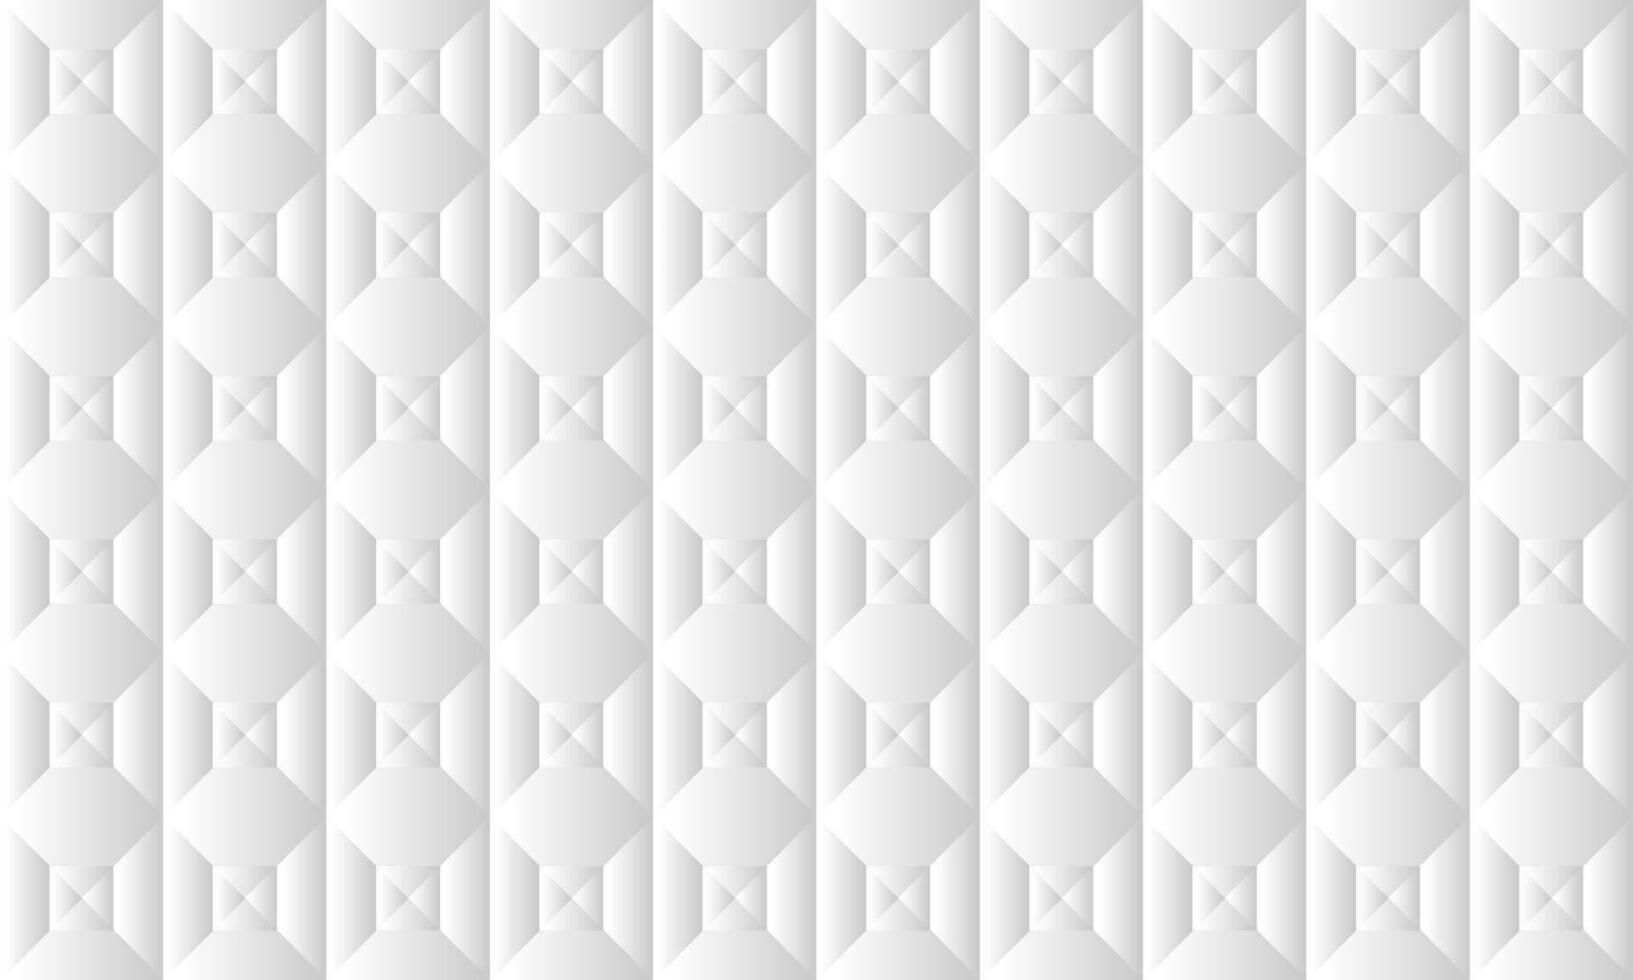 textura de fundo geométrico branco e cinza abstrato vetor